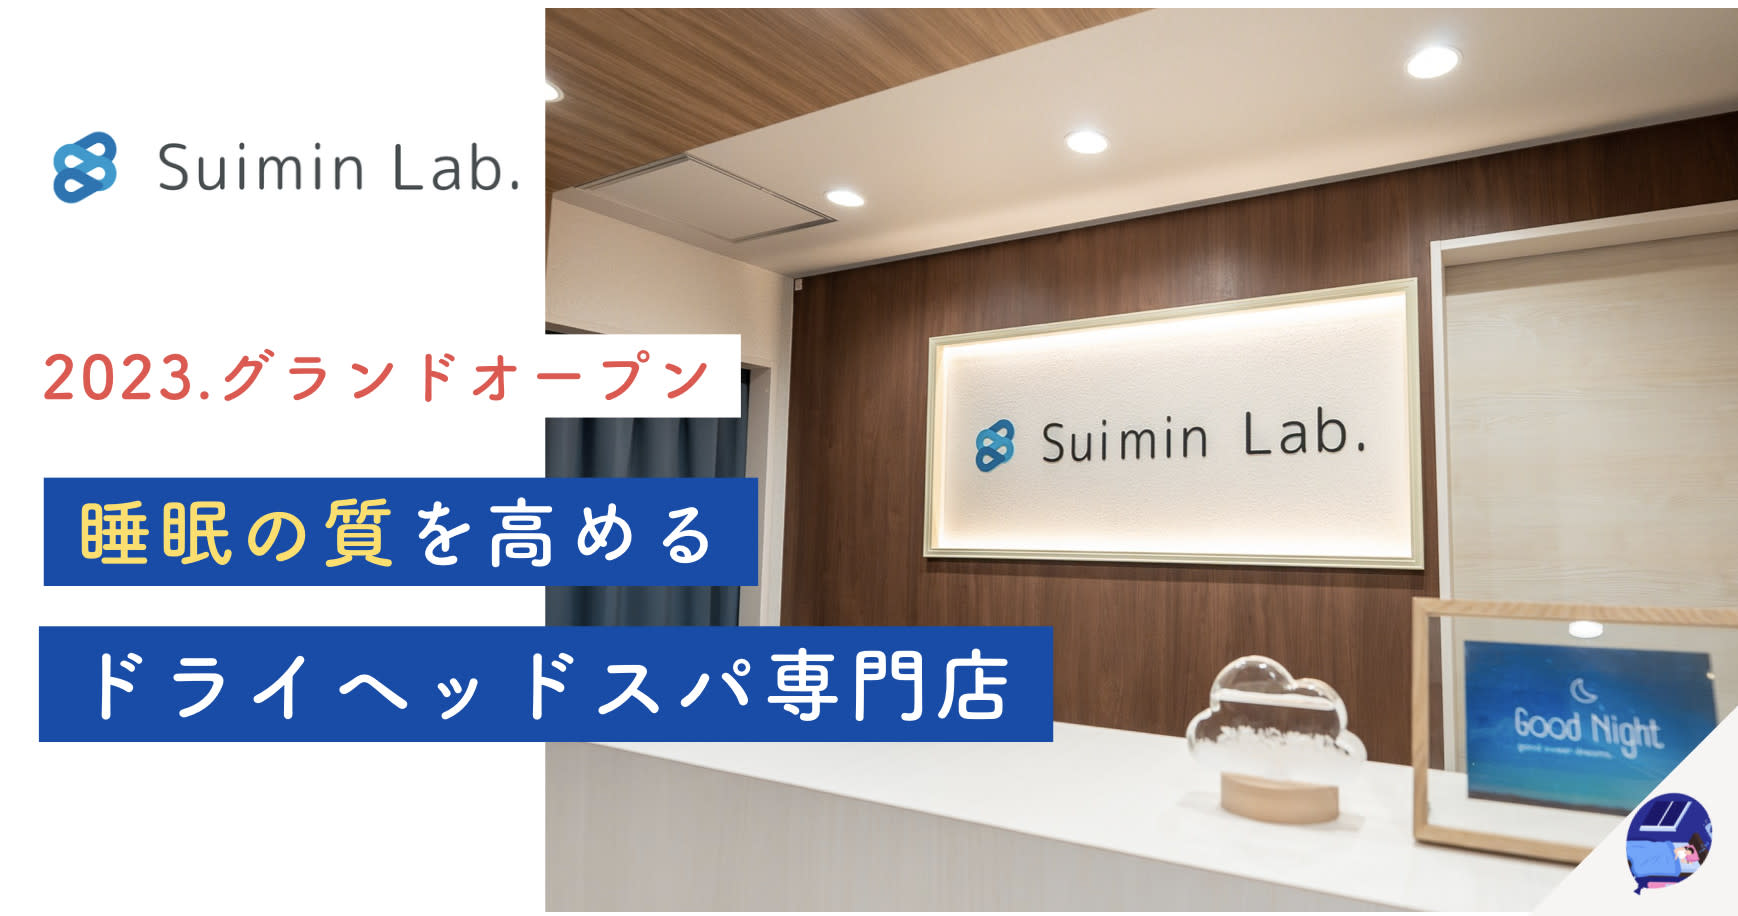 Suimin Lab.のアイキャッチ画像